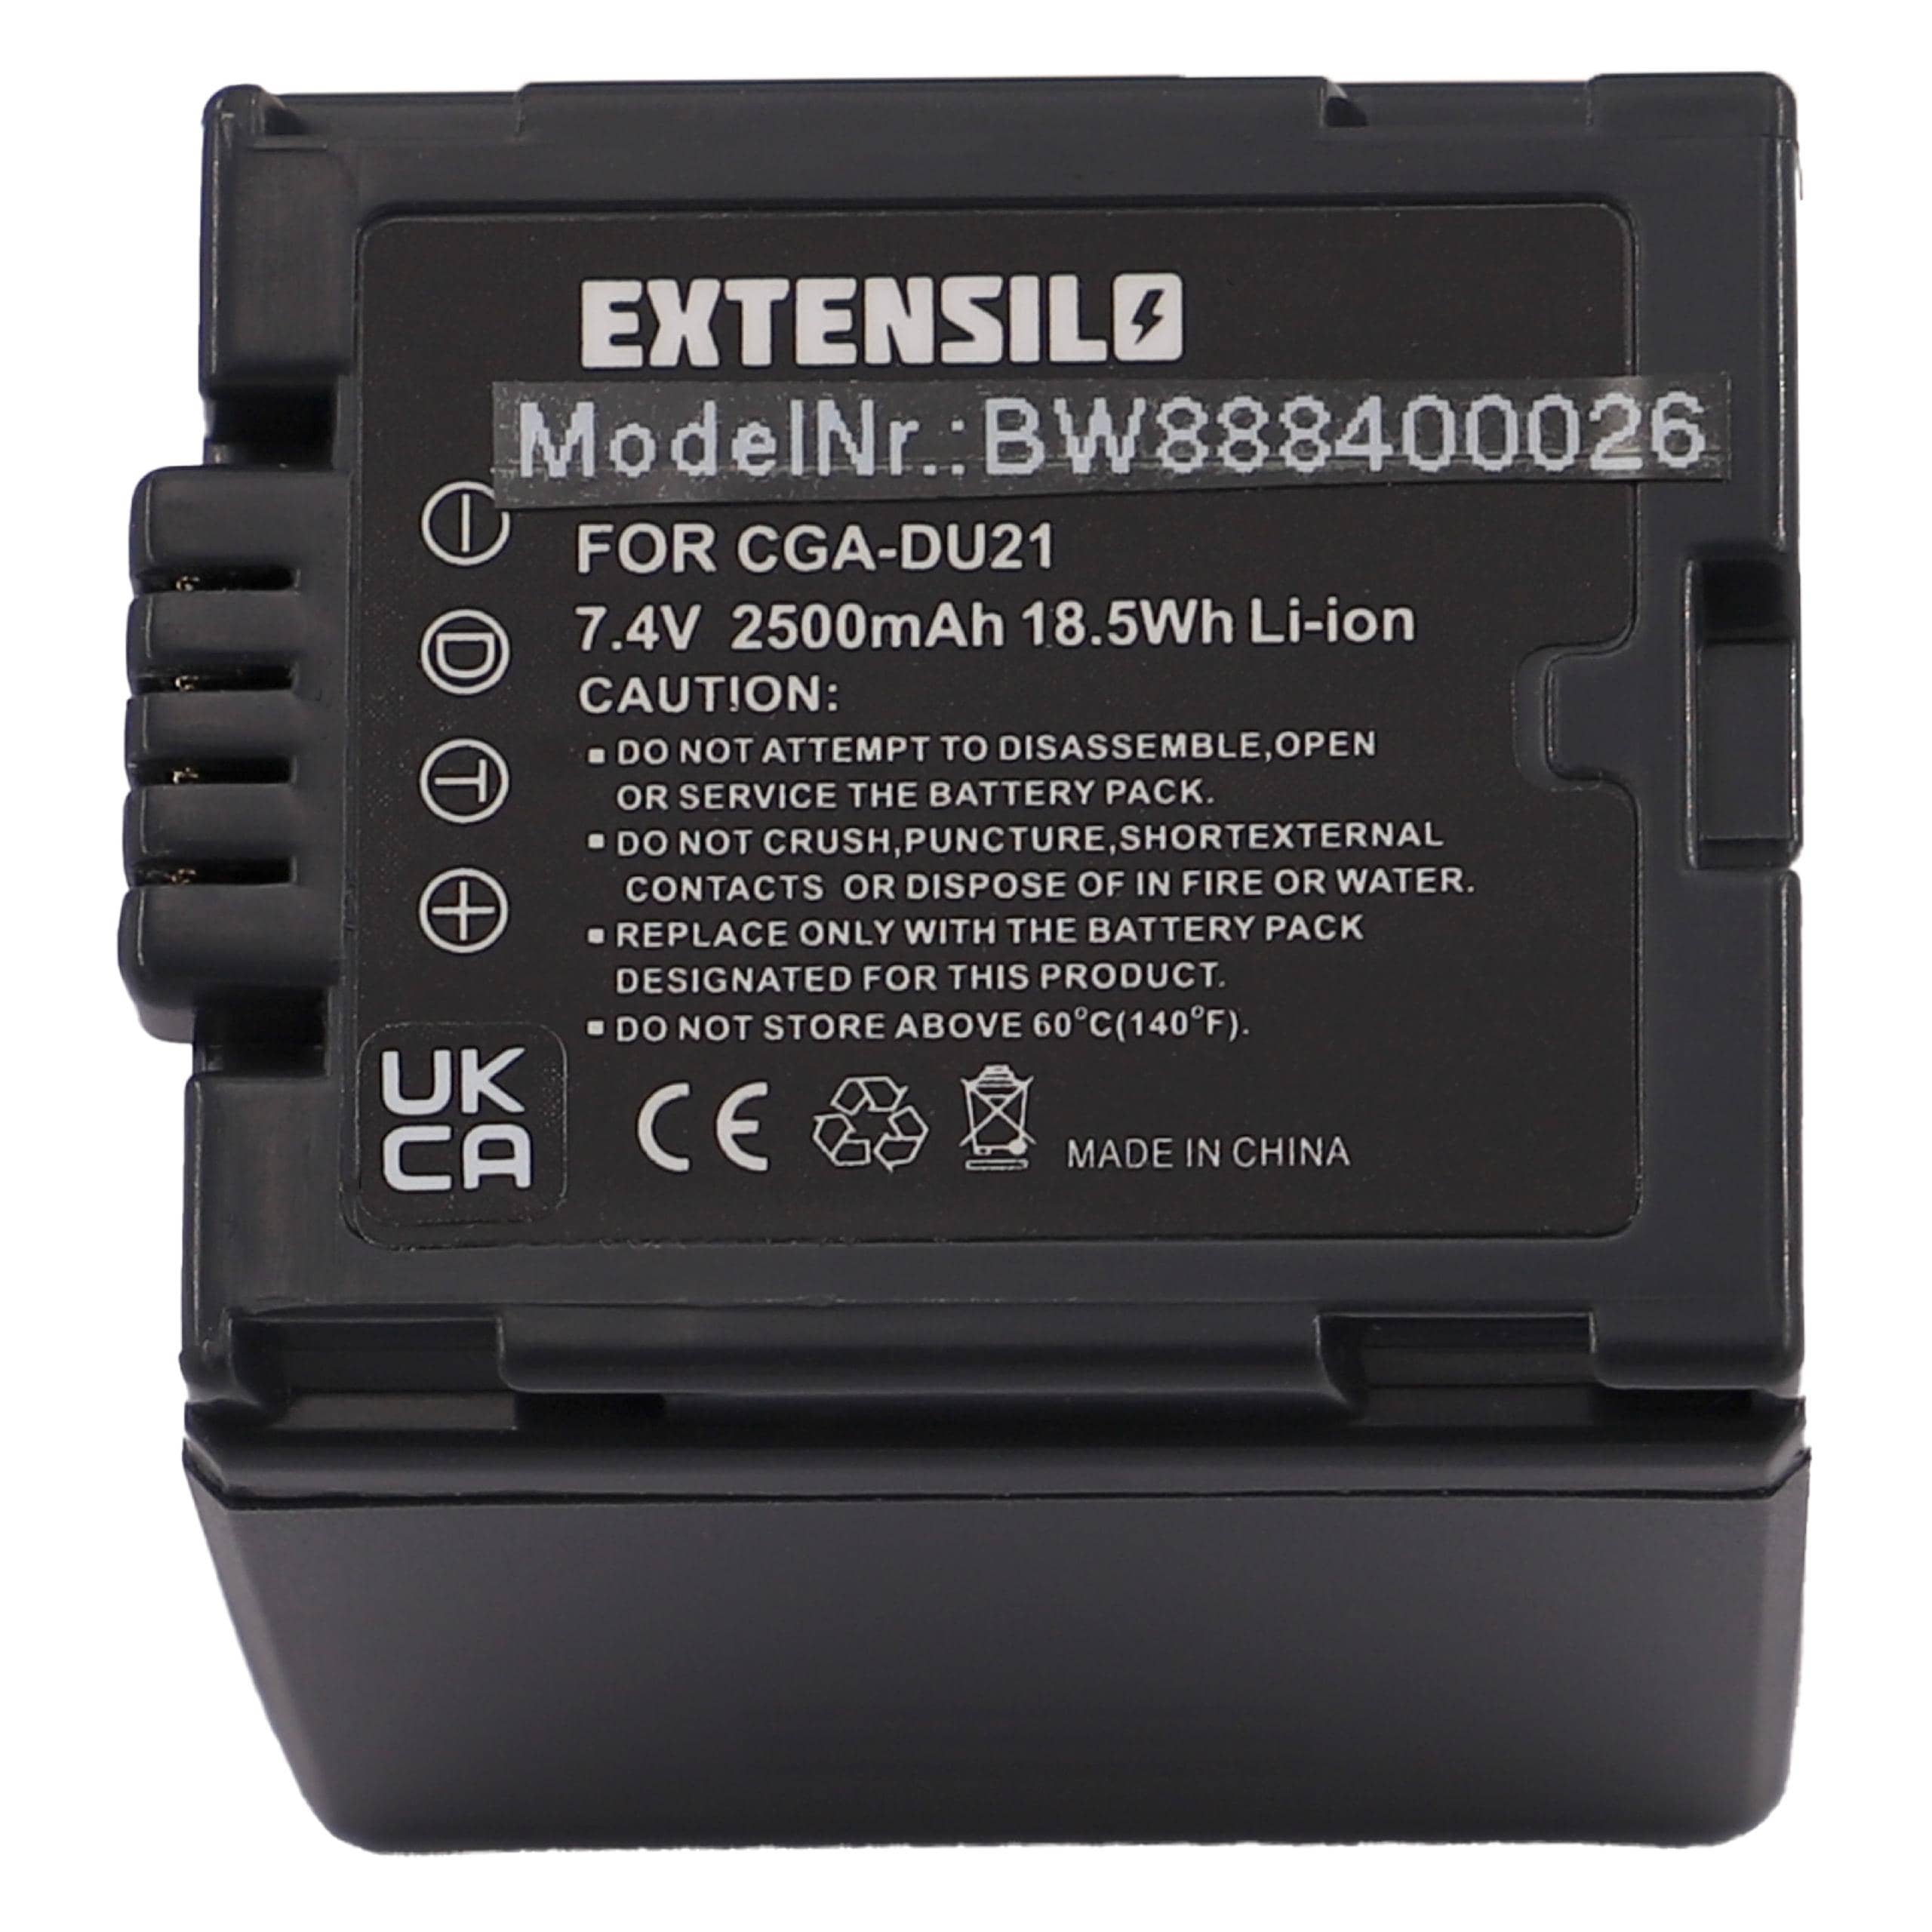 Batterie remplace Hitachi DZ-BP21, DZ-BP14s, DZ-BP07s pour appareil photo - 2500mAh 7,4V Li-ion